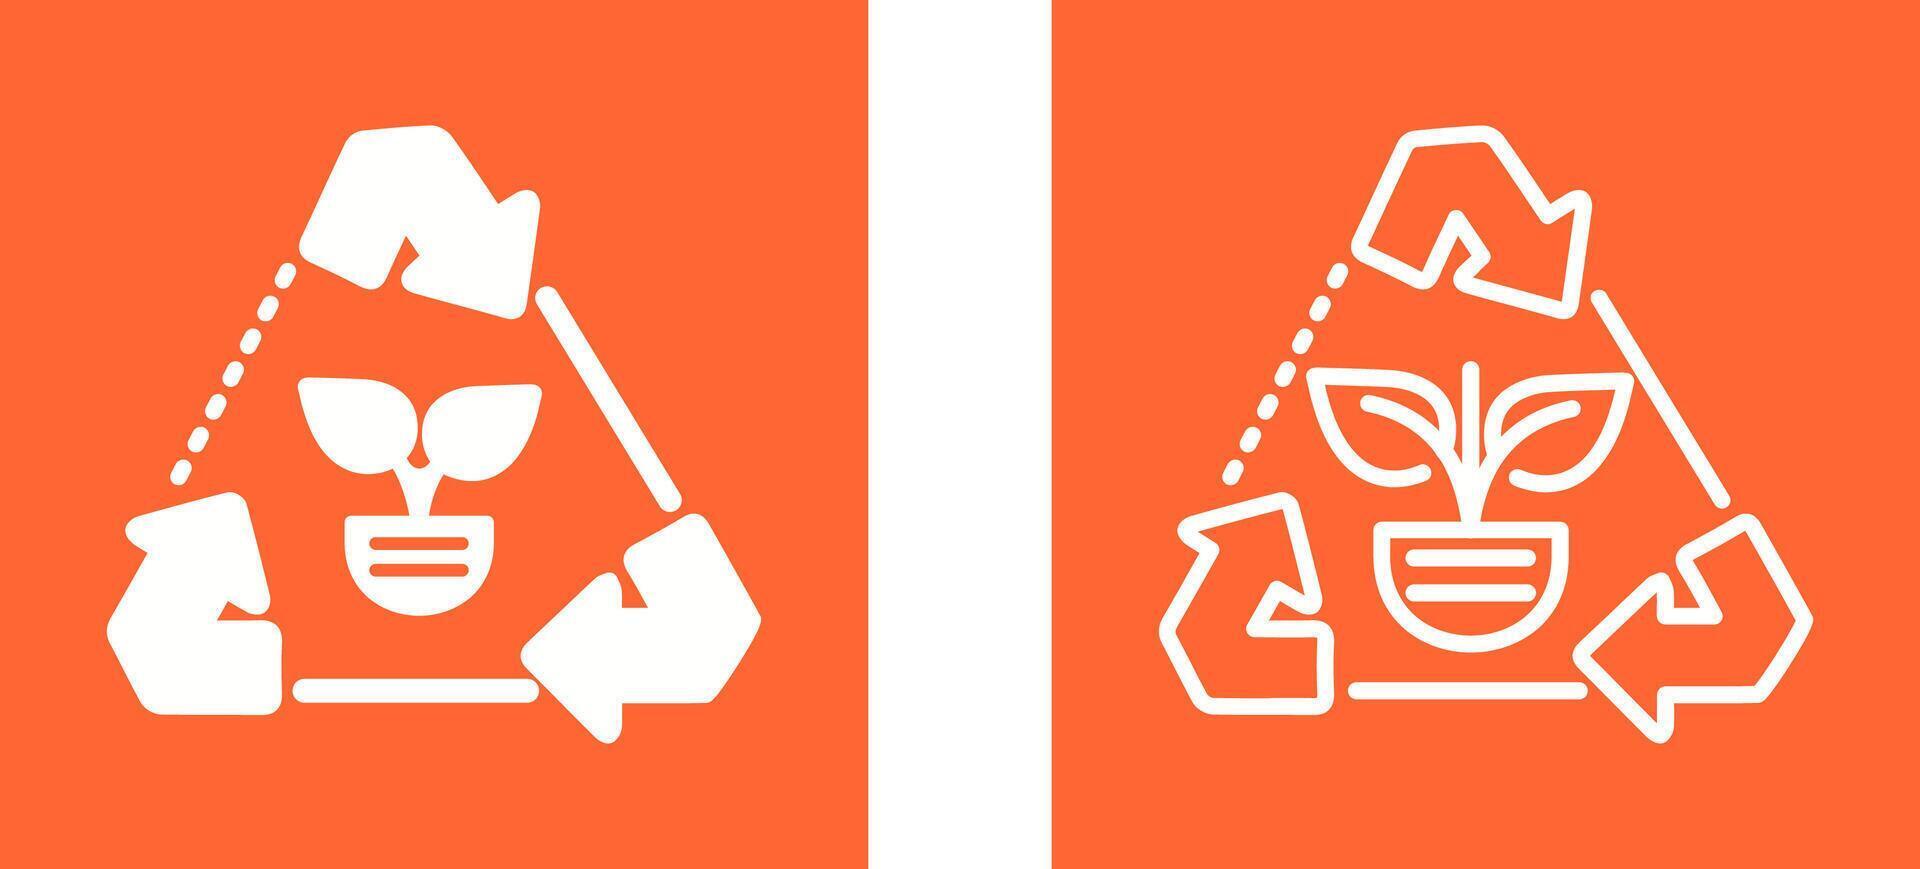 Recycle Arrows Vector Icon